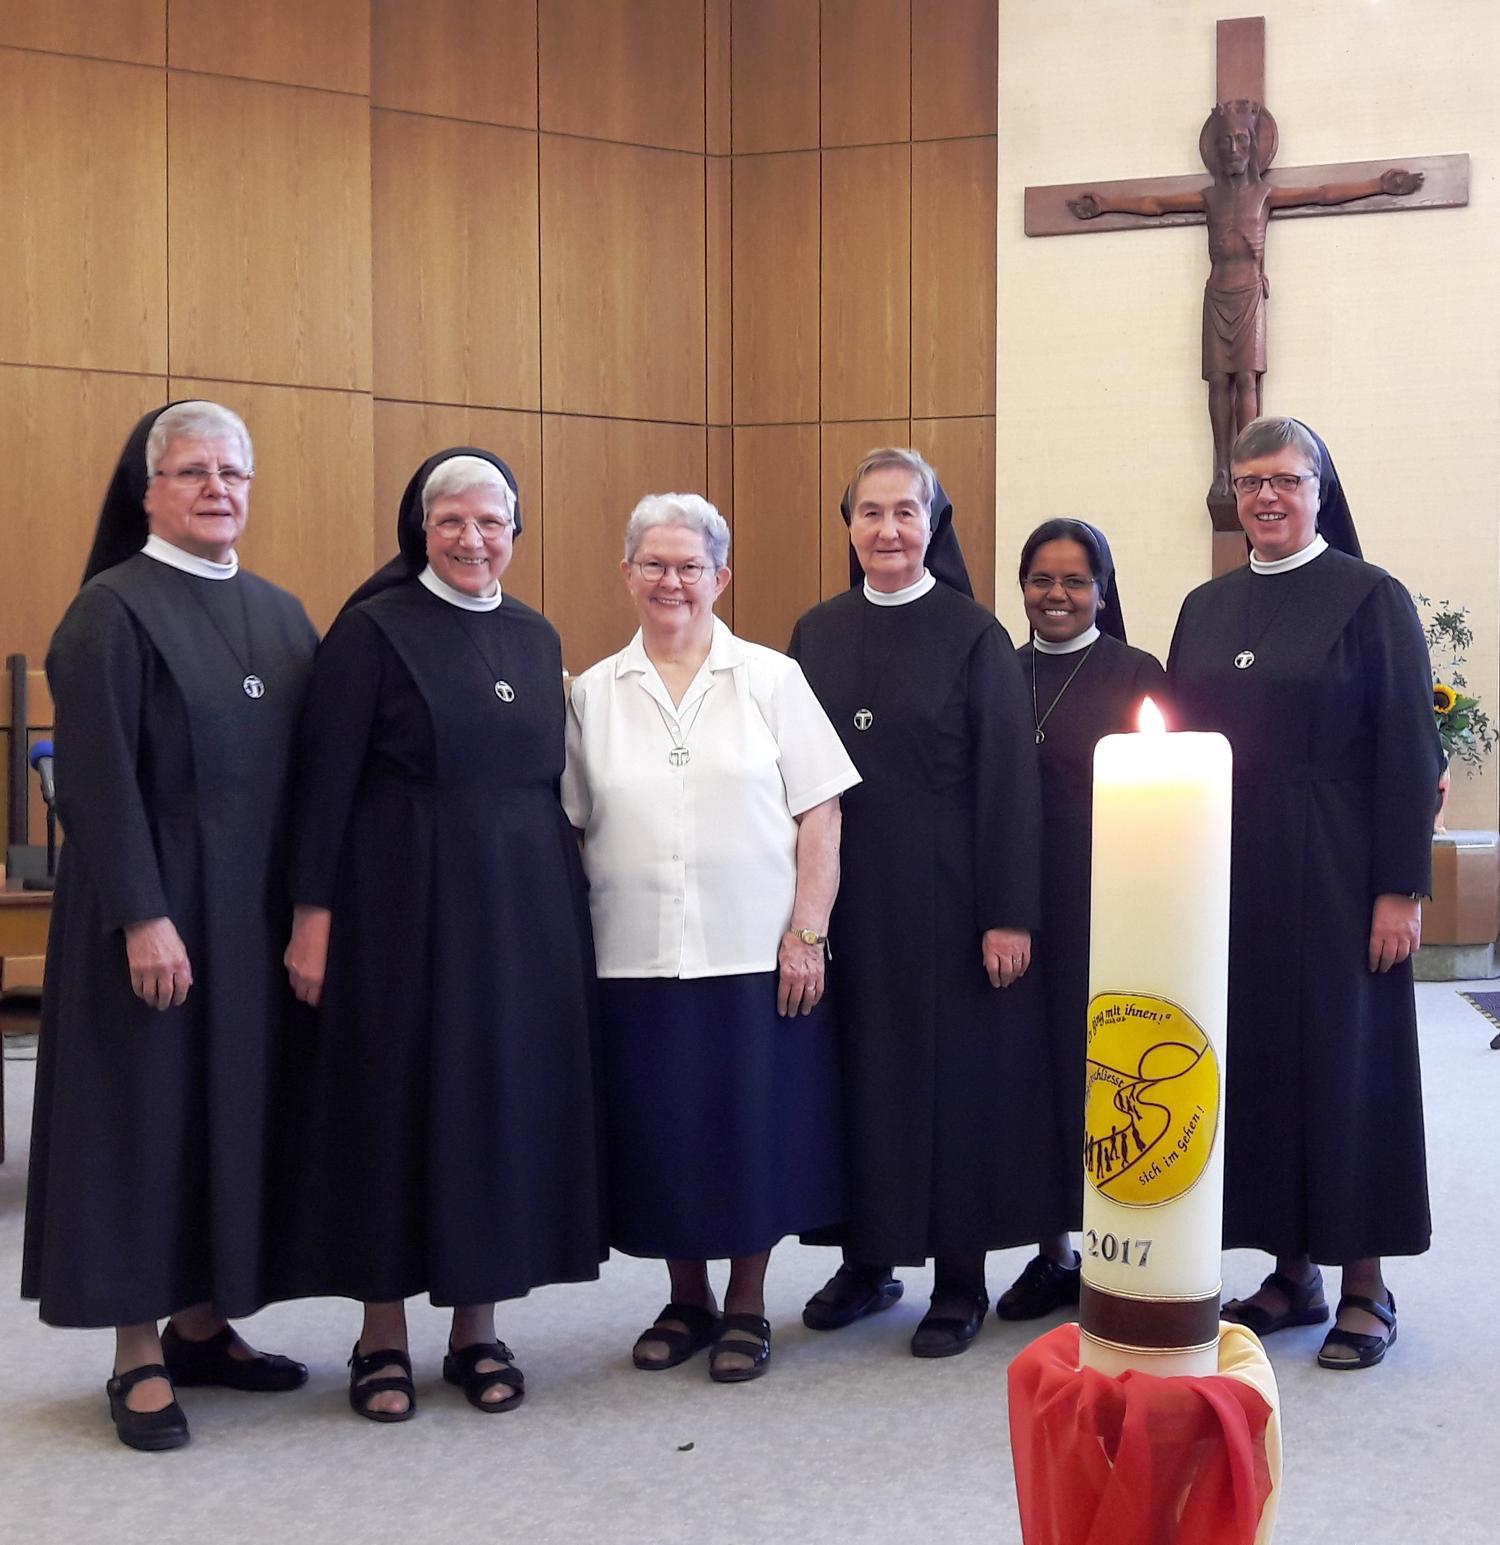 Von links nach rechts: Schwester M. Gabriele Löpenhaus, Schwester M. Herbertis Lubek, Schwester Sherrey Murphy (Generaloberin), Schwester M. Otgundis Aagten, Schwester Leemary Sebastian, Schwester M. Hiltrud Vacker.